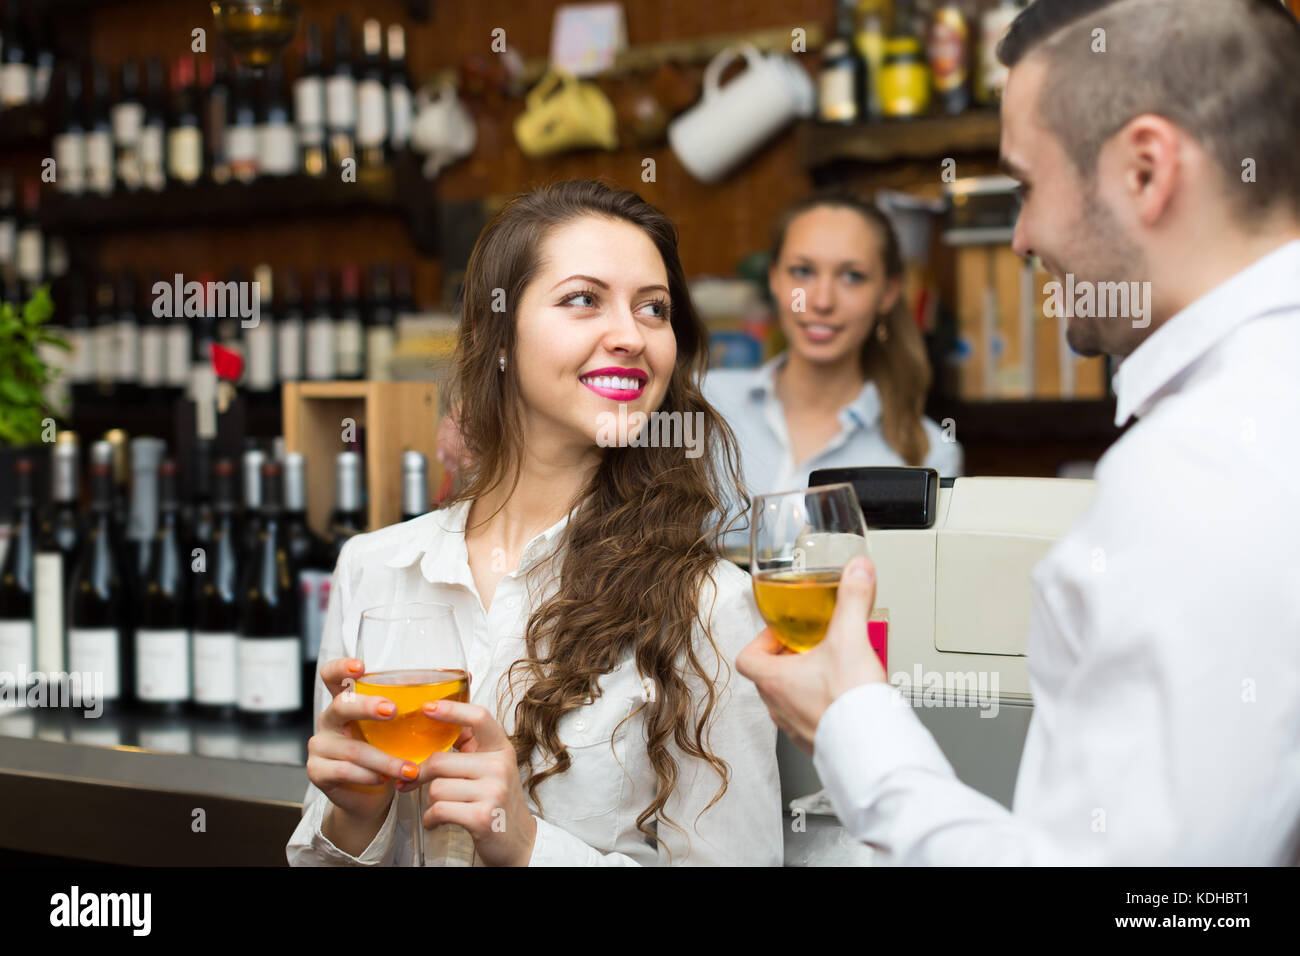 Lächelnd Barkeeper und junge Gäste Paar mit Wein am Tresen. Fokus auf Mädchen Stockfoto